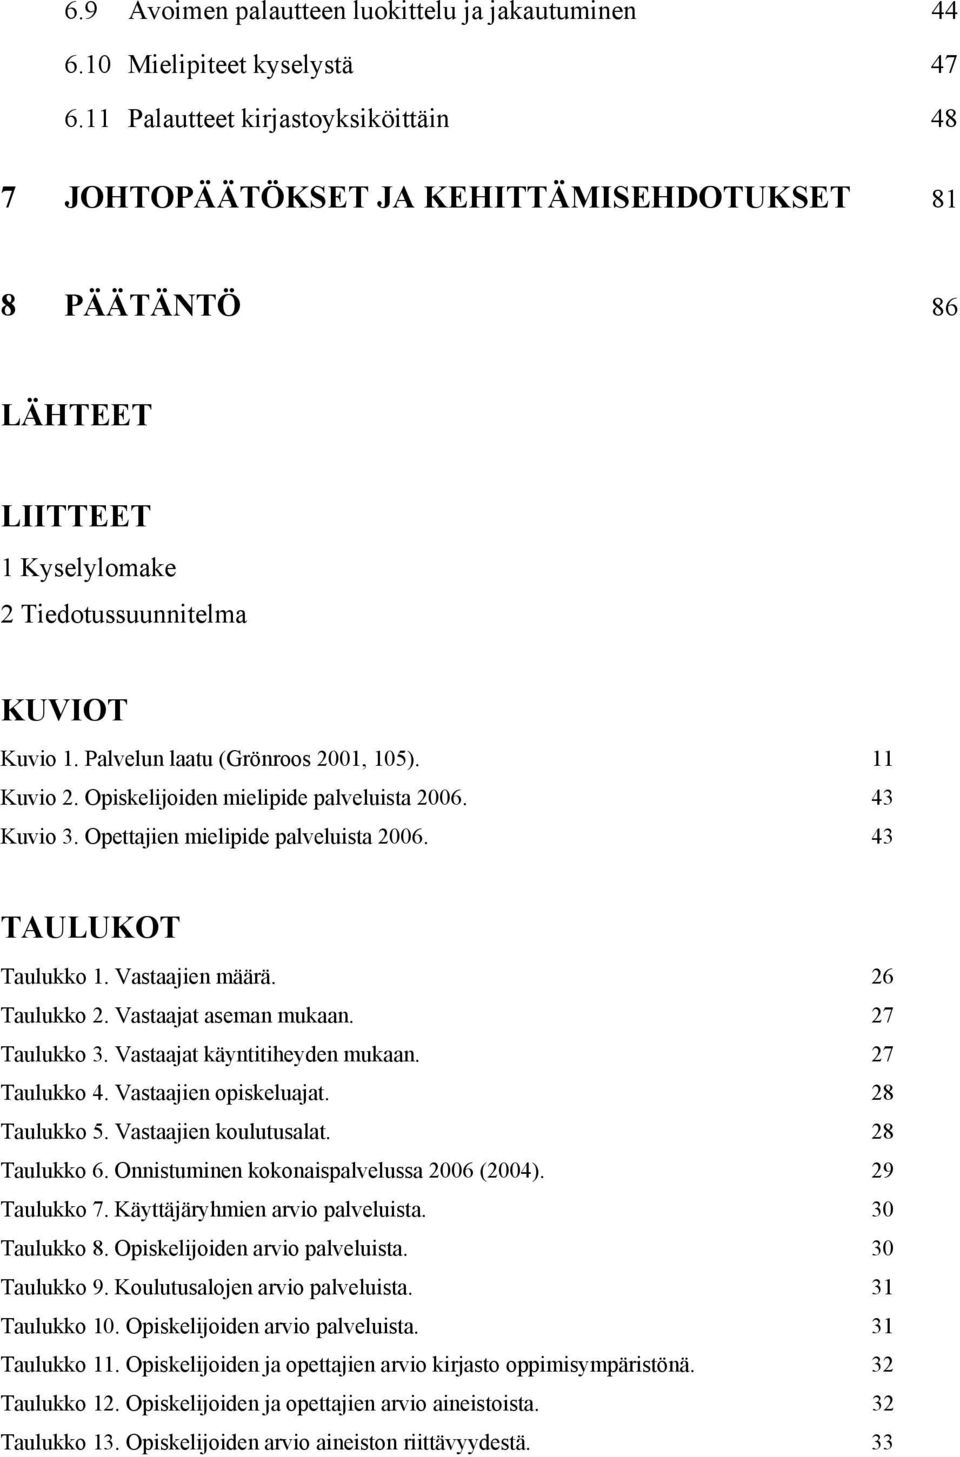 Palvelun laatu (Grönroos 2001, 105). 11 Kuvio 2. Opiskelijoiden mielipide palveluista 2006. 43 Kuvio 3. Opettajien mielipide palveluista 2006. 43 TAULUKOT Taulukko 1. Vastaajien määrä. 26 Taulukko 2.